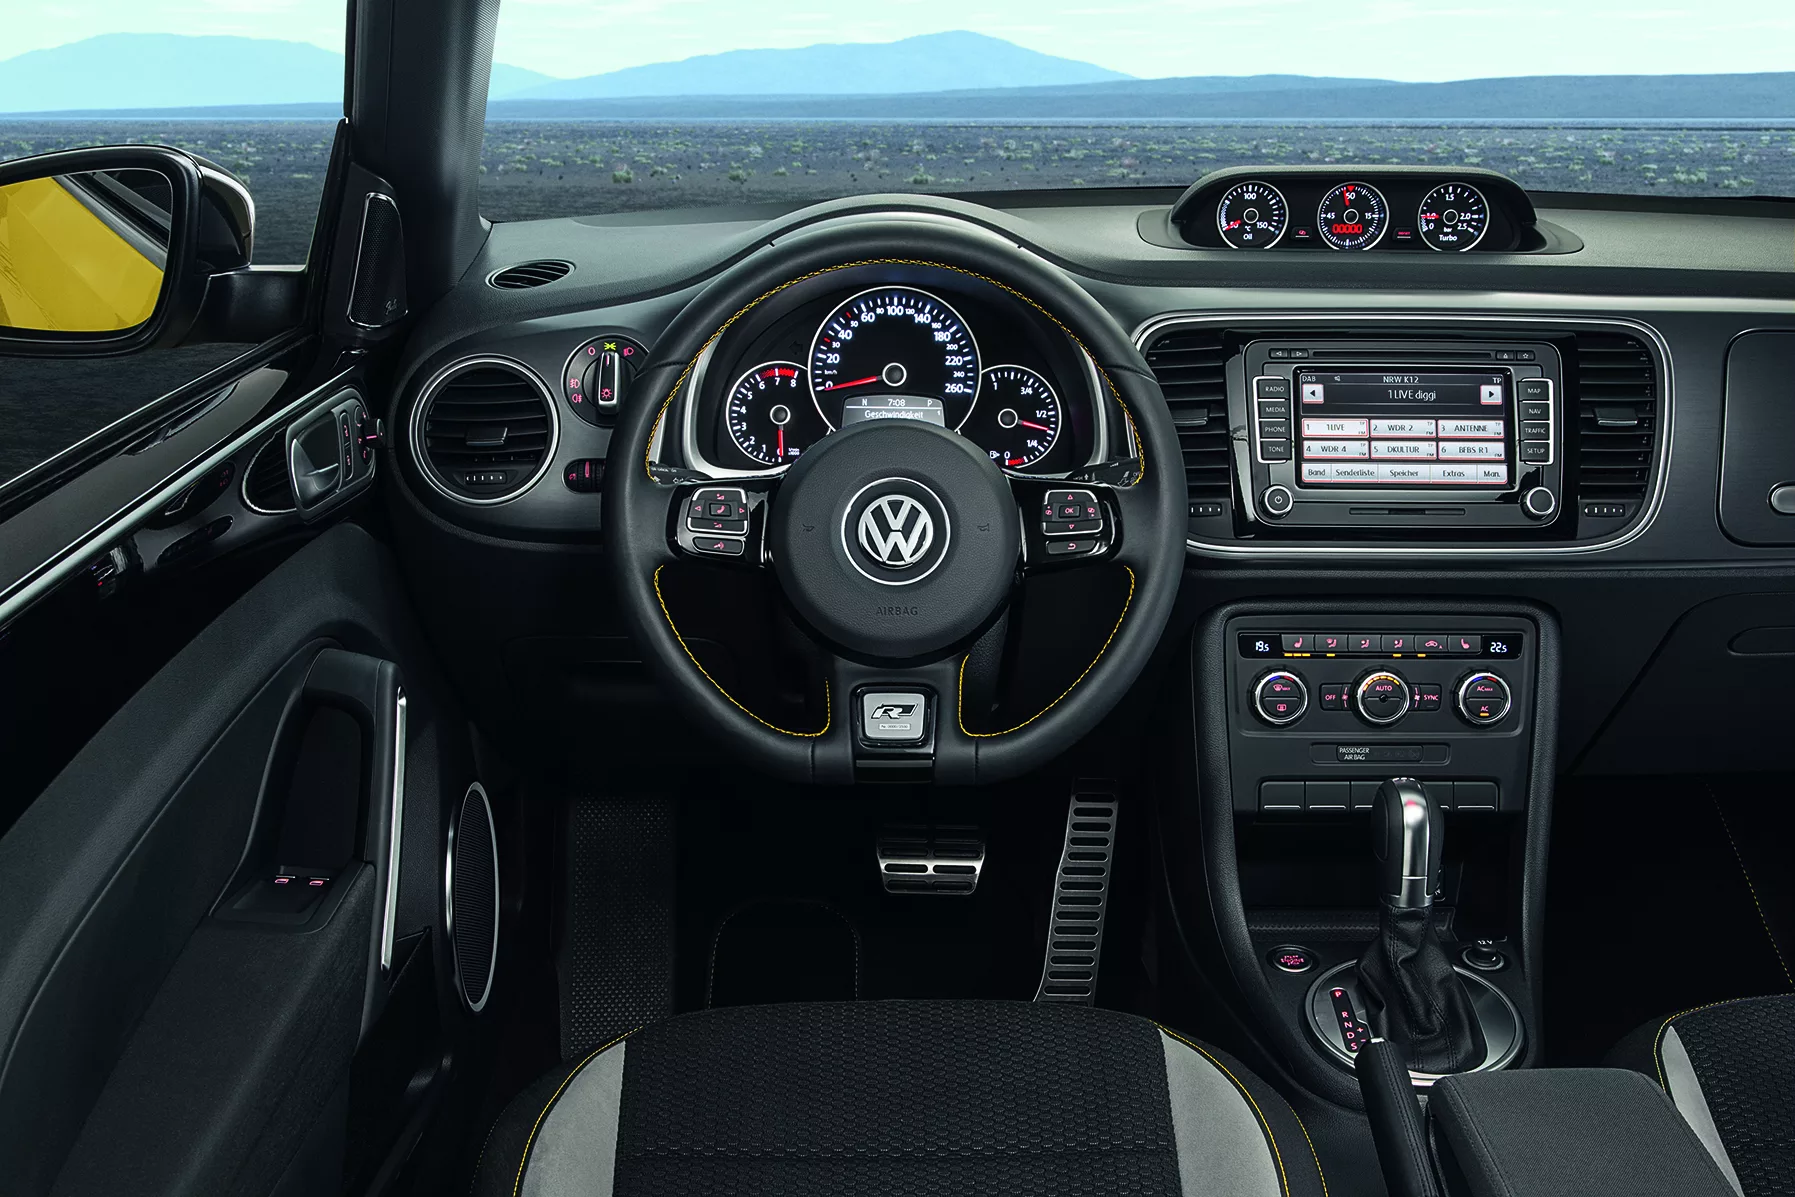 Volkswagen lance une Coccinelle GSR limitée à 3.500 exemplaires - Challenges